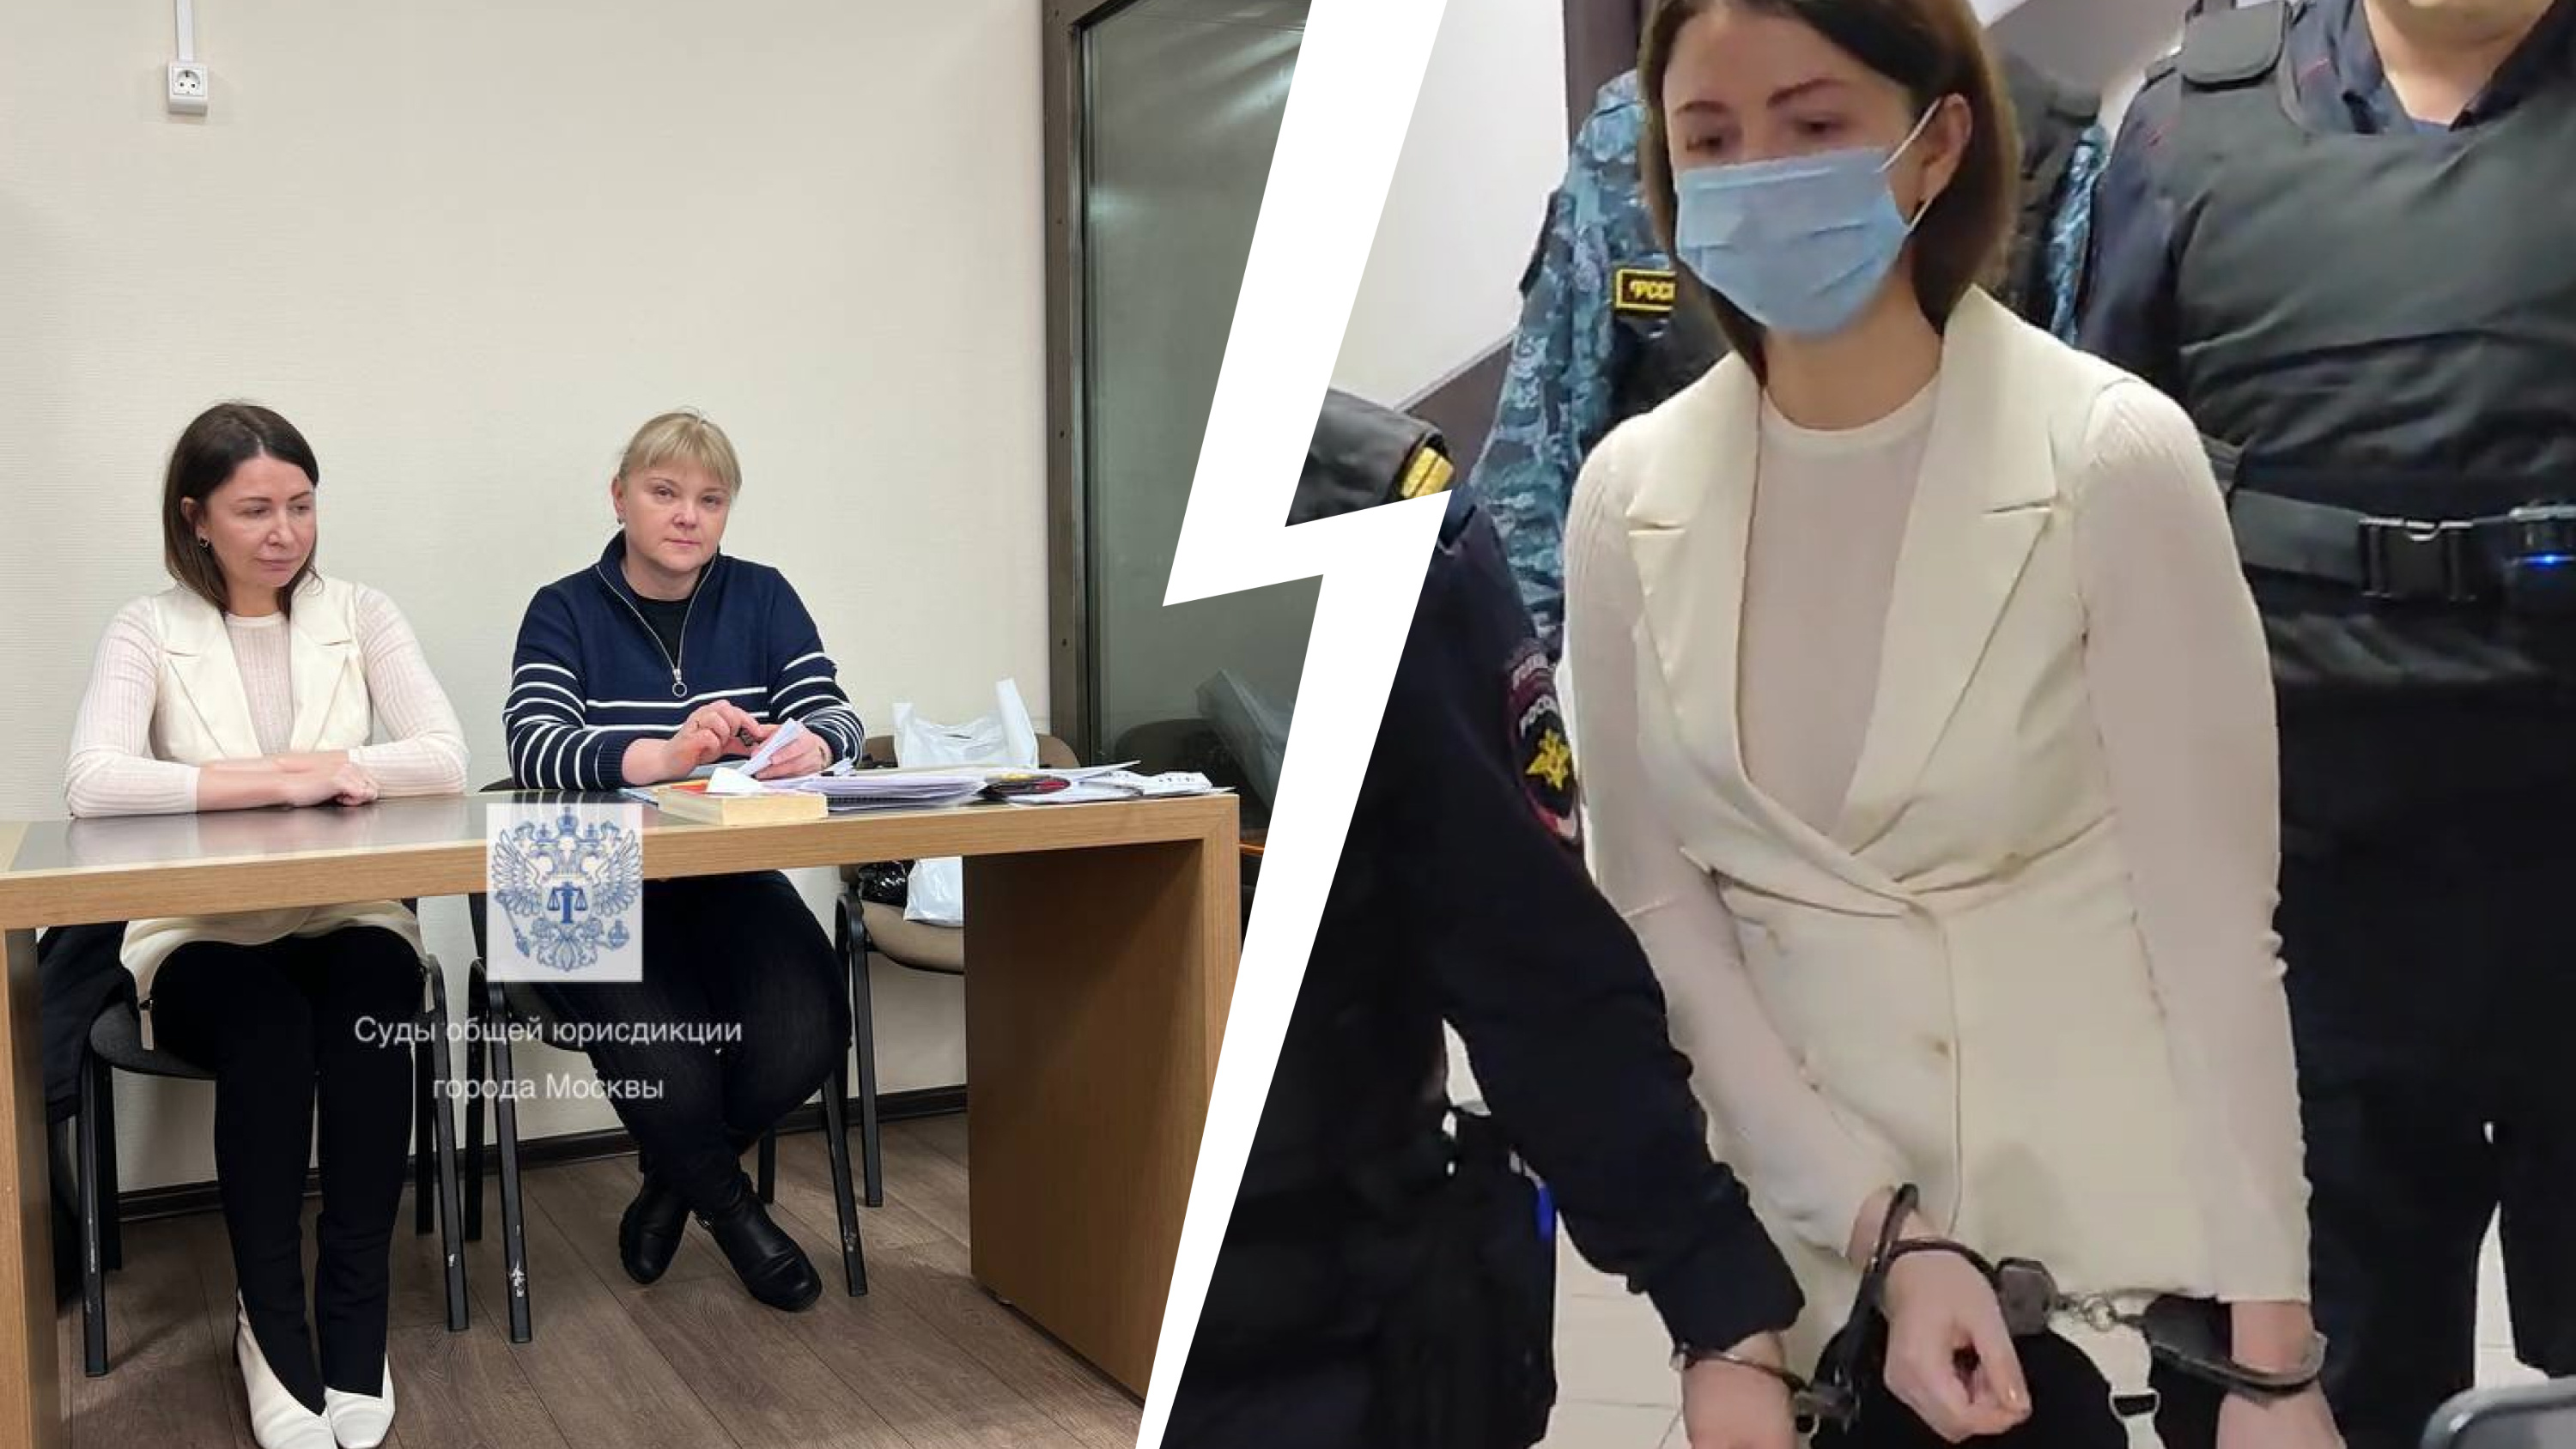 «Женщина сидеть в тюрьме не должна». Что происходило в московском суде, который отправил Блиновскую в СИЗО